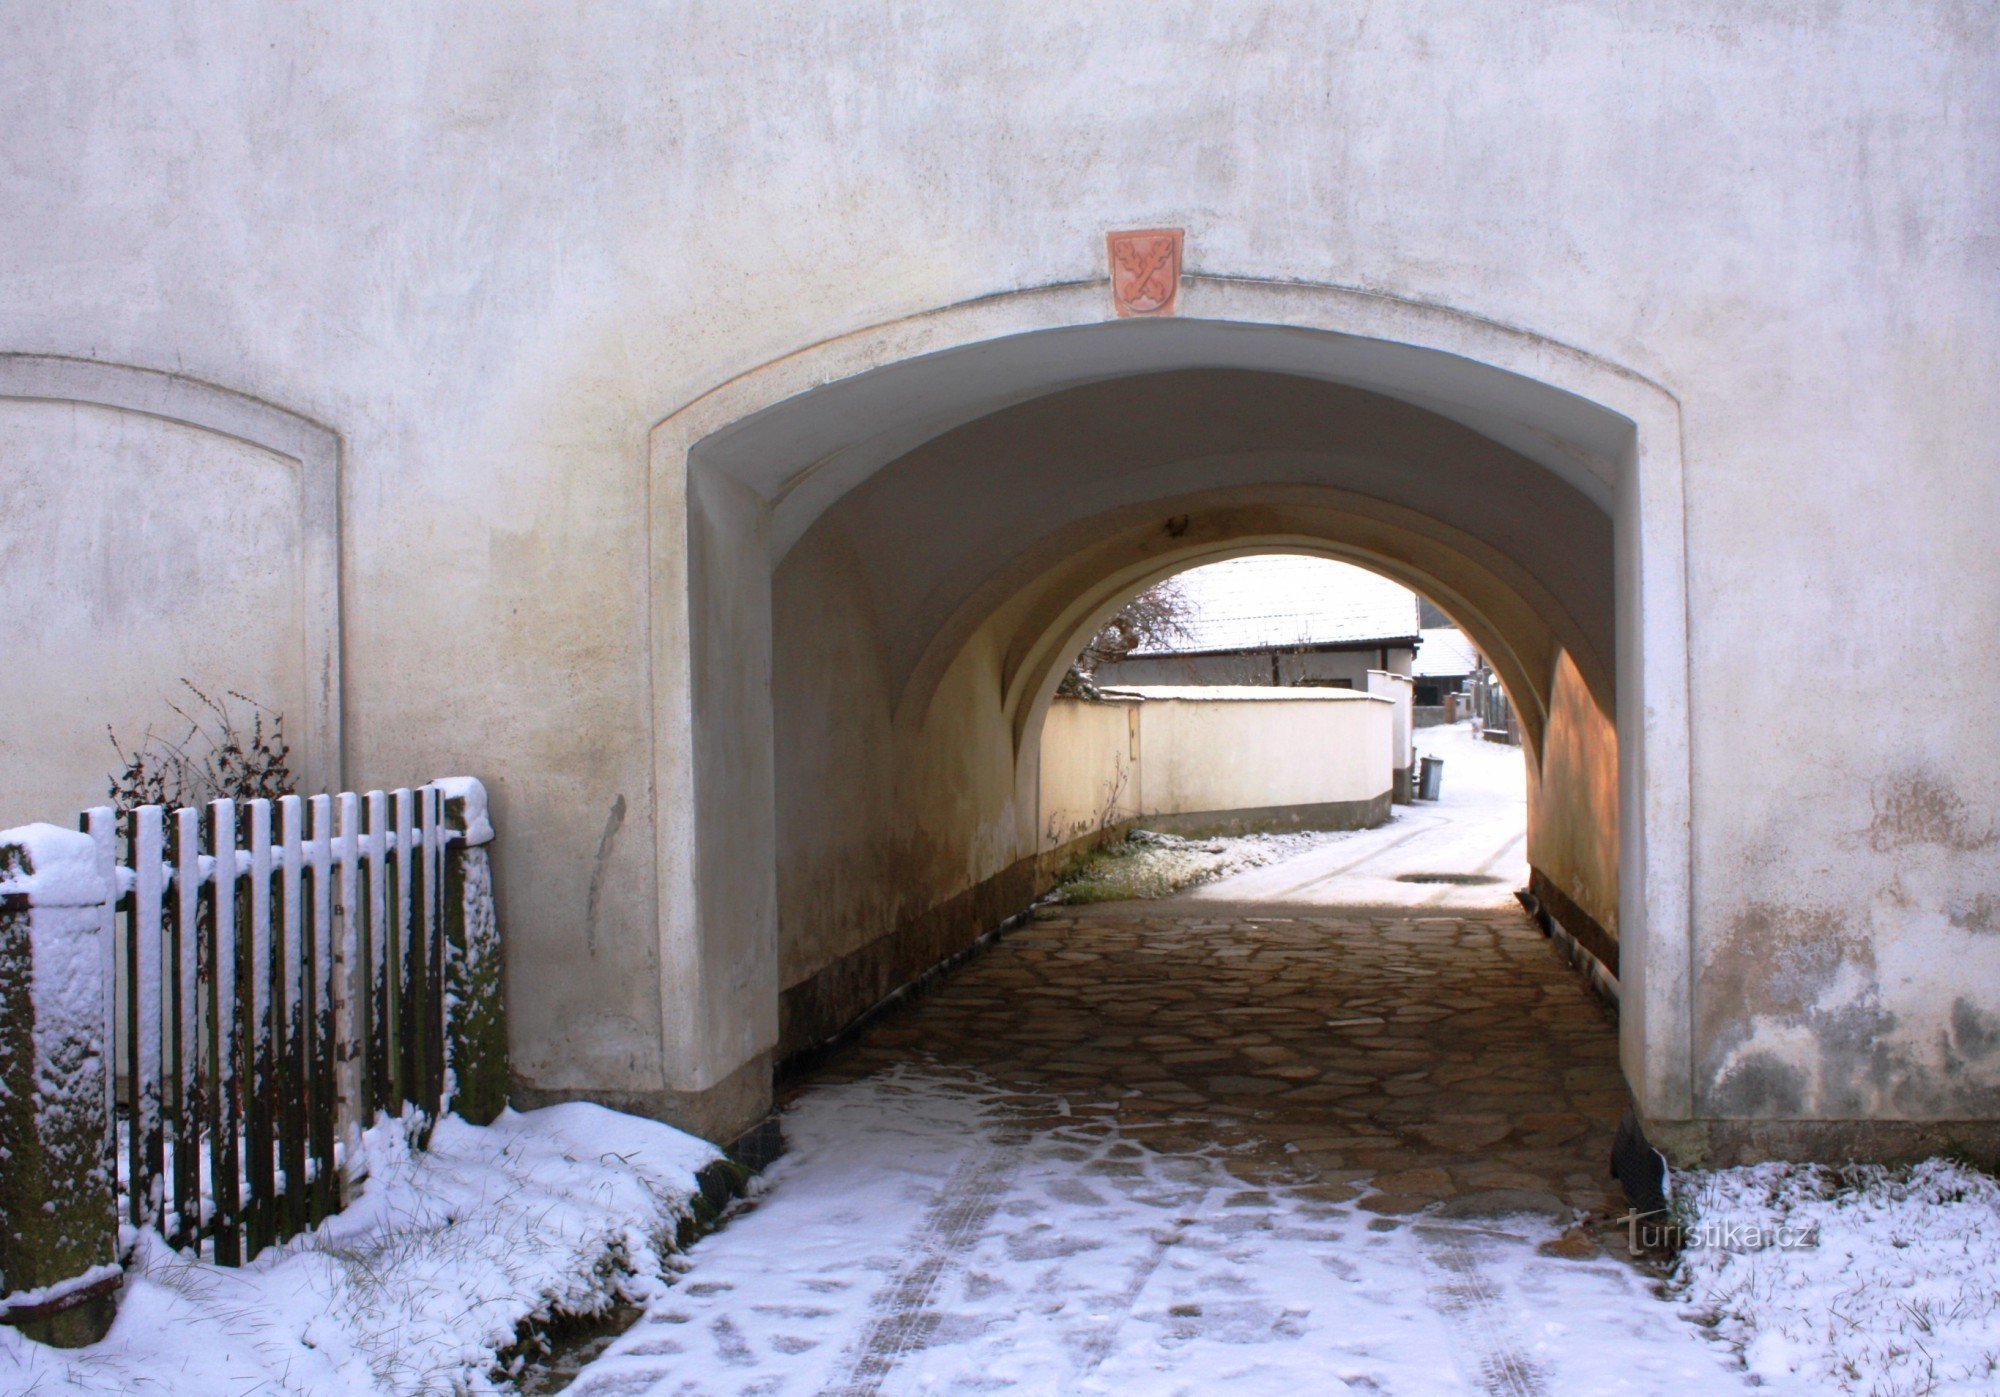 Vue frontale du passage de la forteresse avec les armoiries des Ronovci